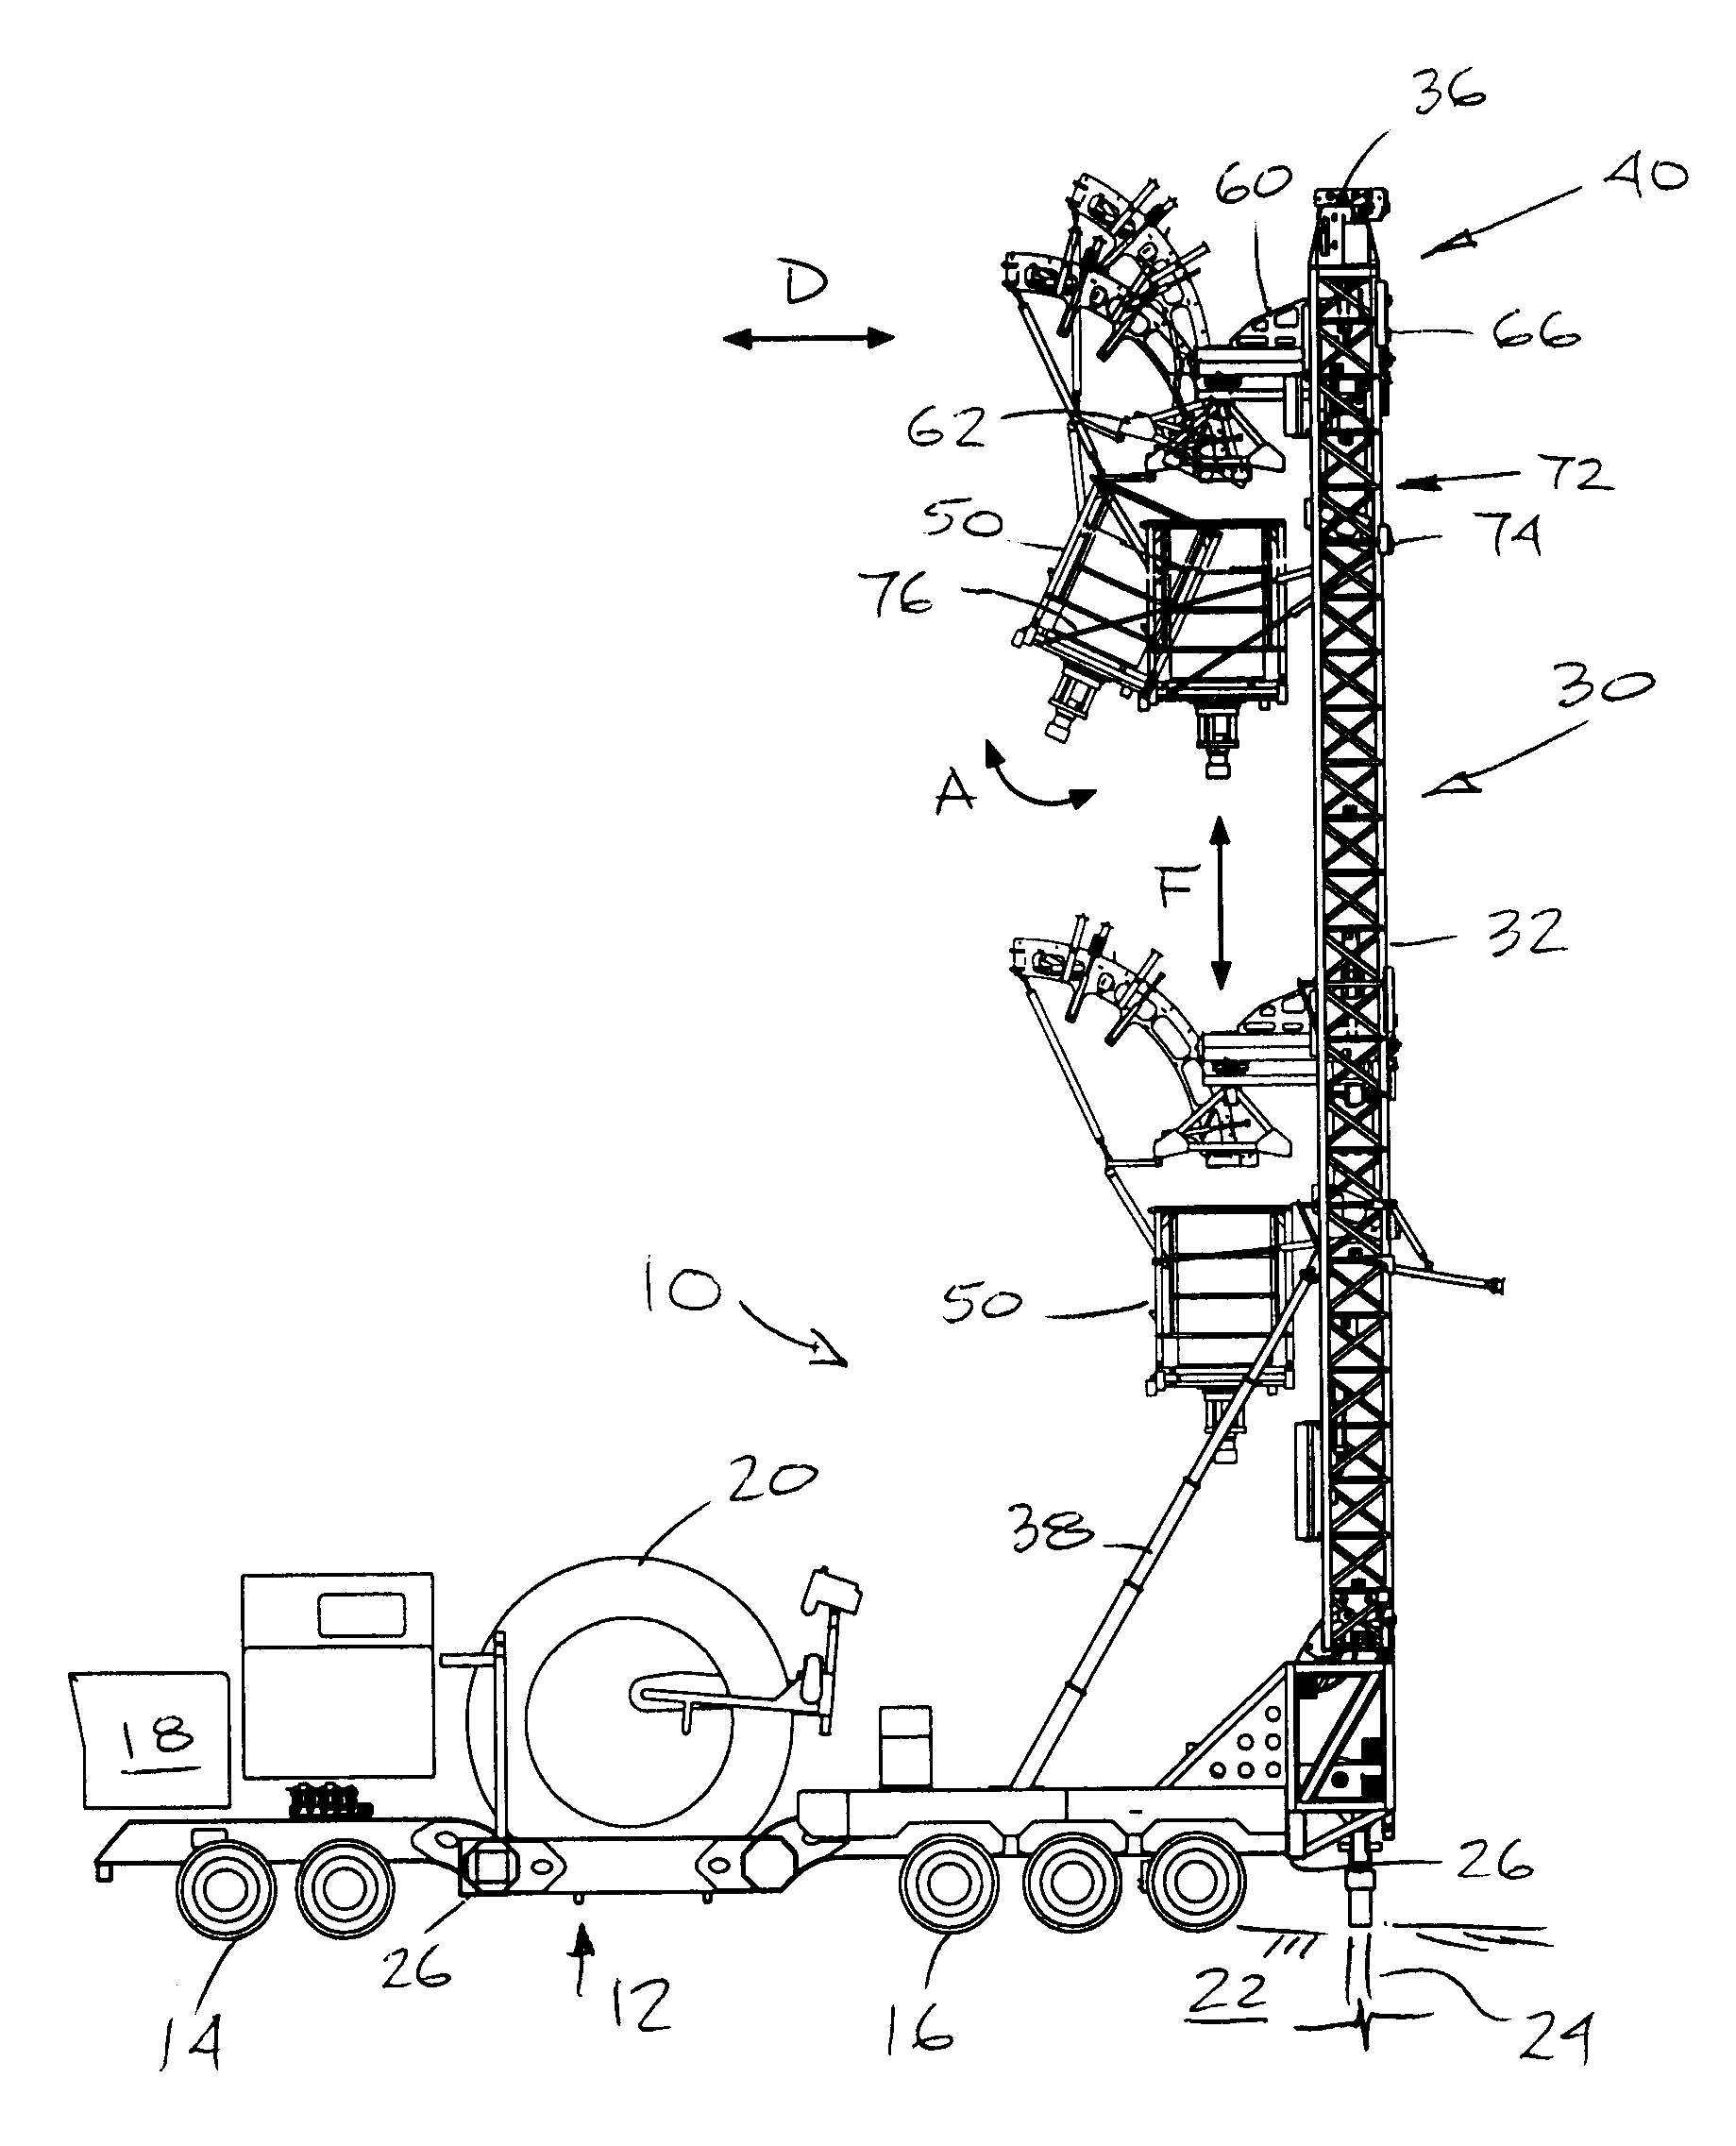 Pivoting injector arrangement